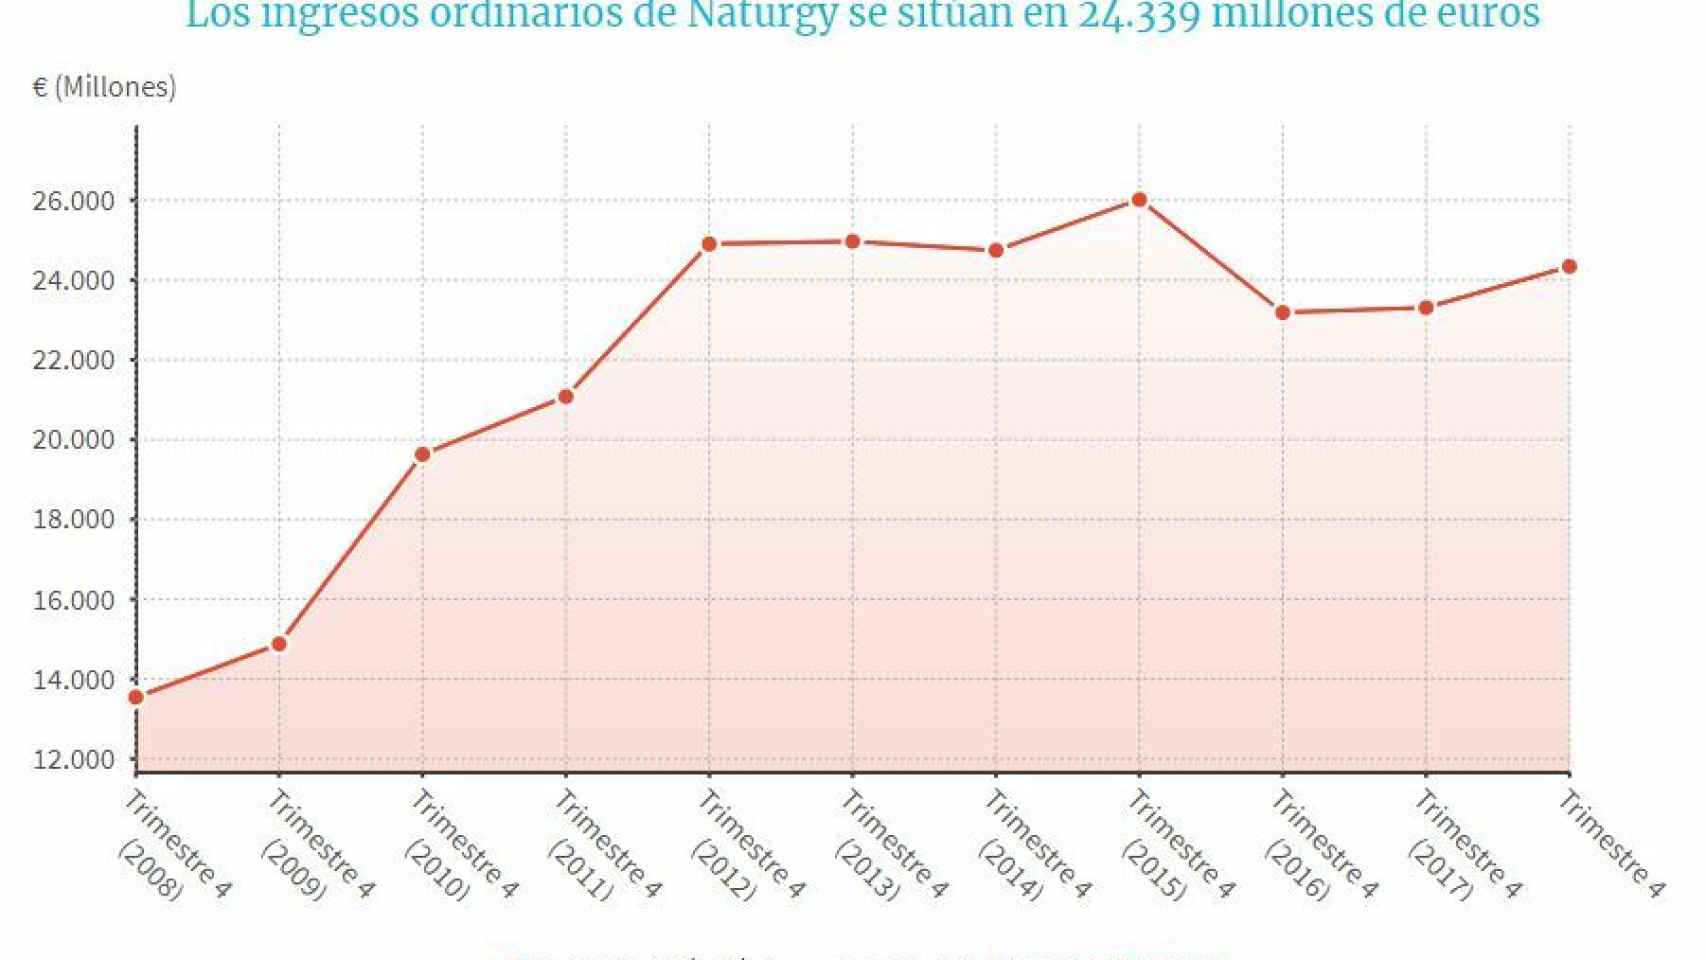 Gráfico de los ingresos ordinarios de Naturgy desde 2008